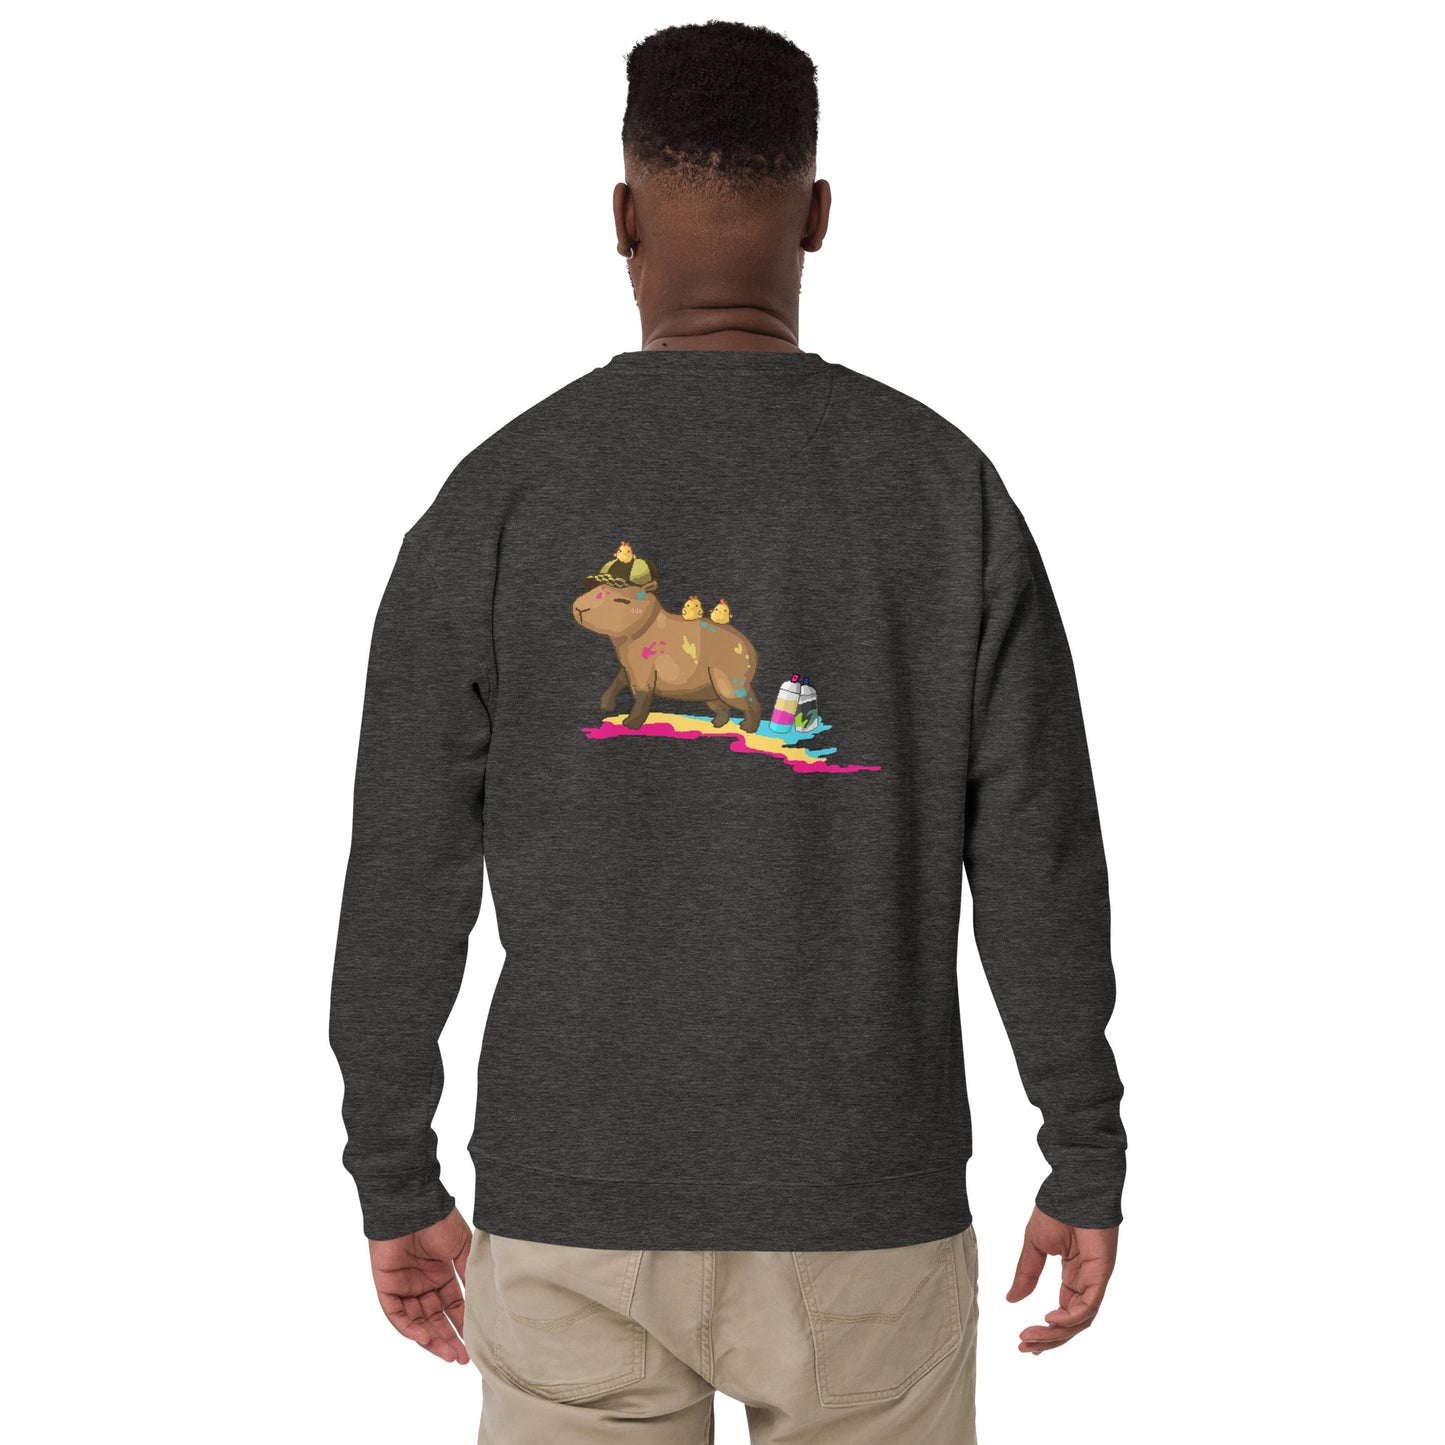 Cool Capy Graffiti Unisex Premium Sweatshirt